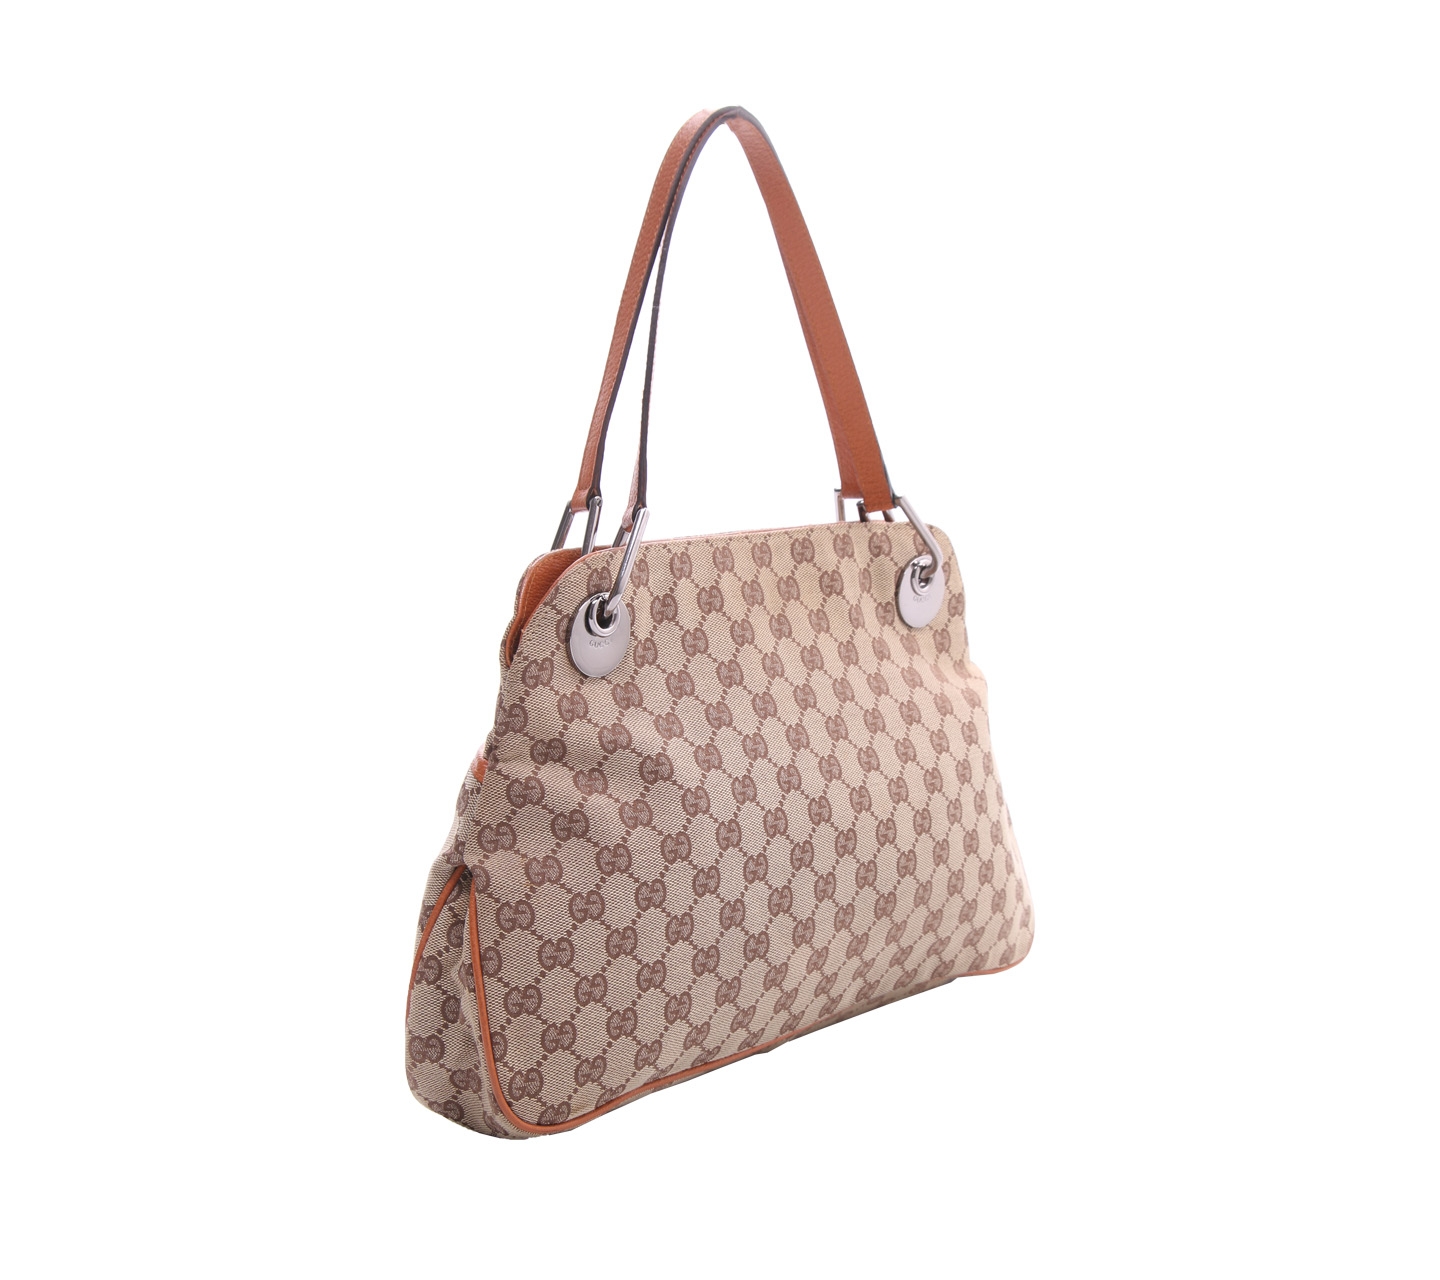 Gucci Brown Monogram Canvas Handbag